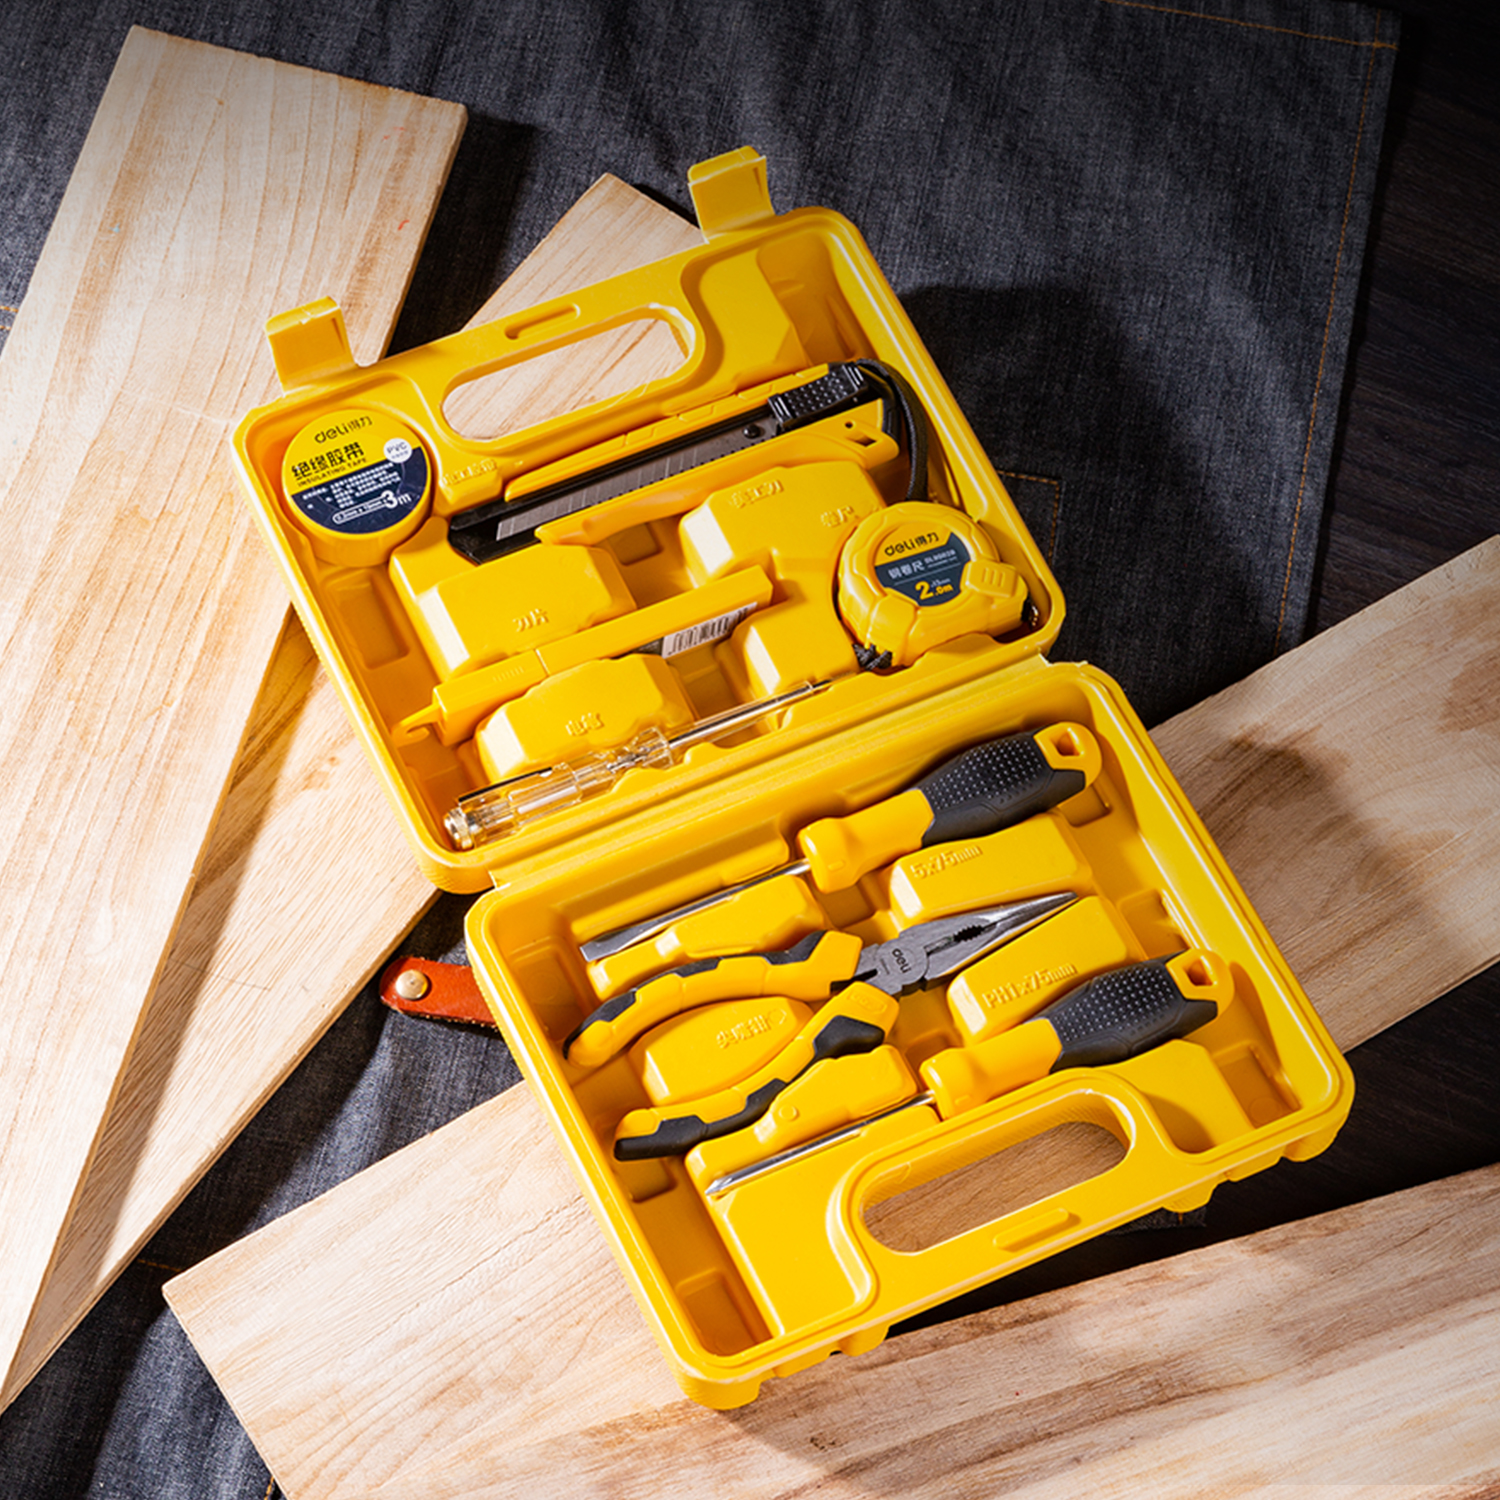 Household Tool Kits